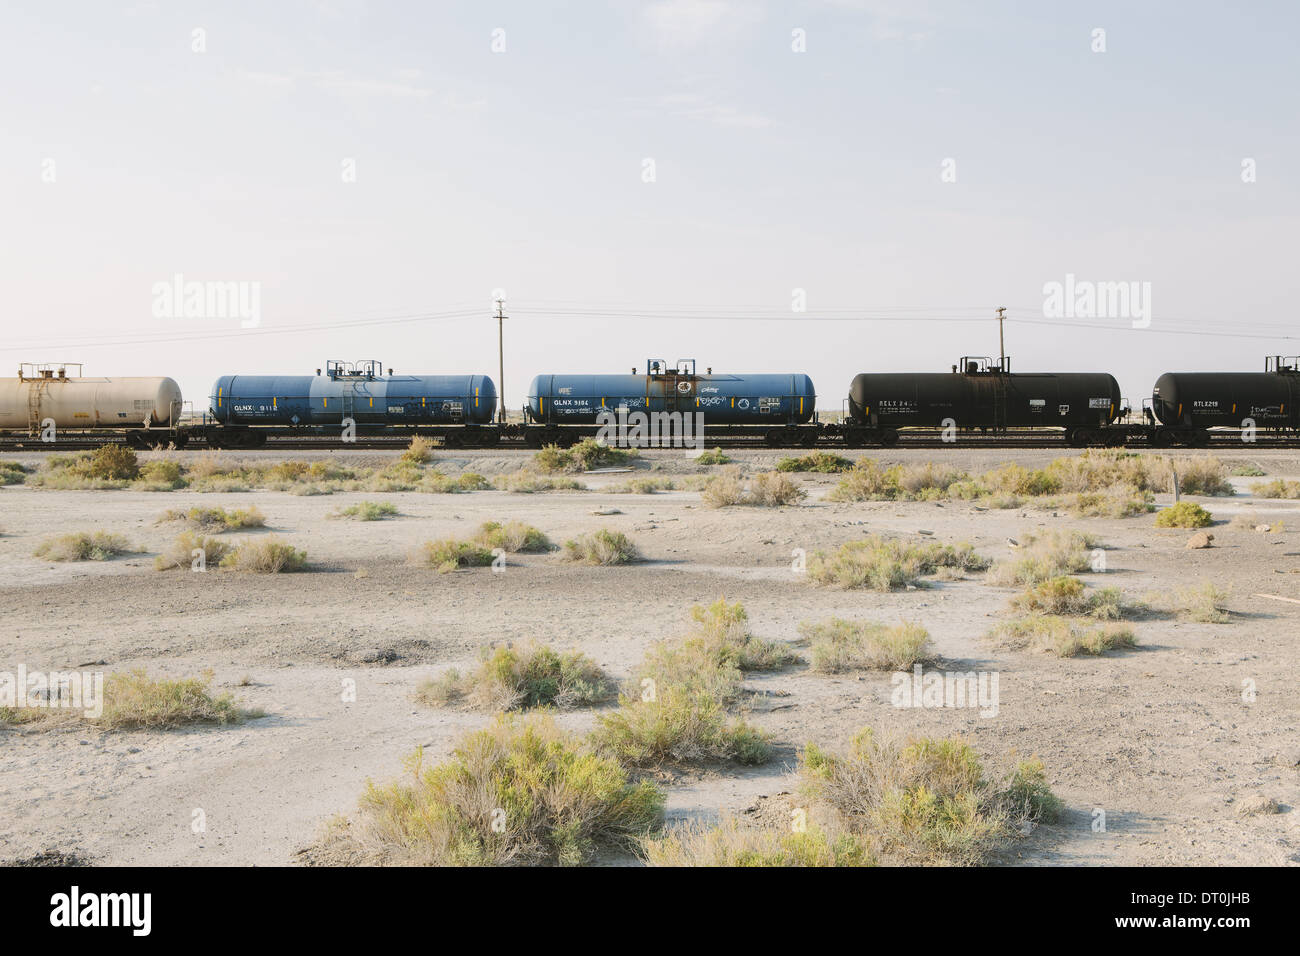 Utah USA goods train on train track running through desert Stock Photo